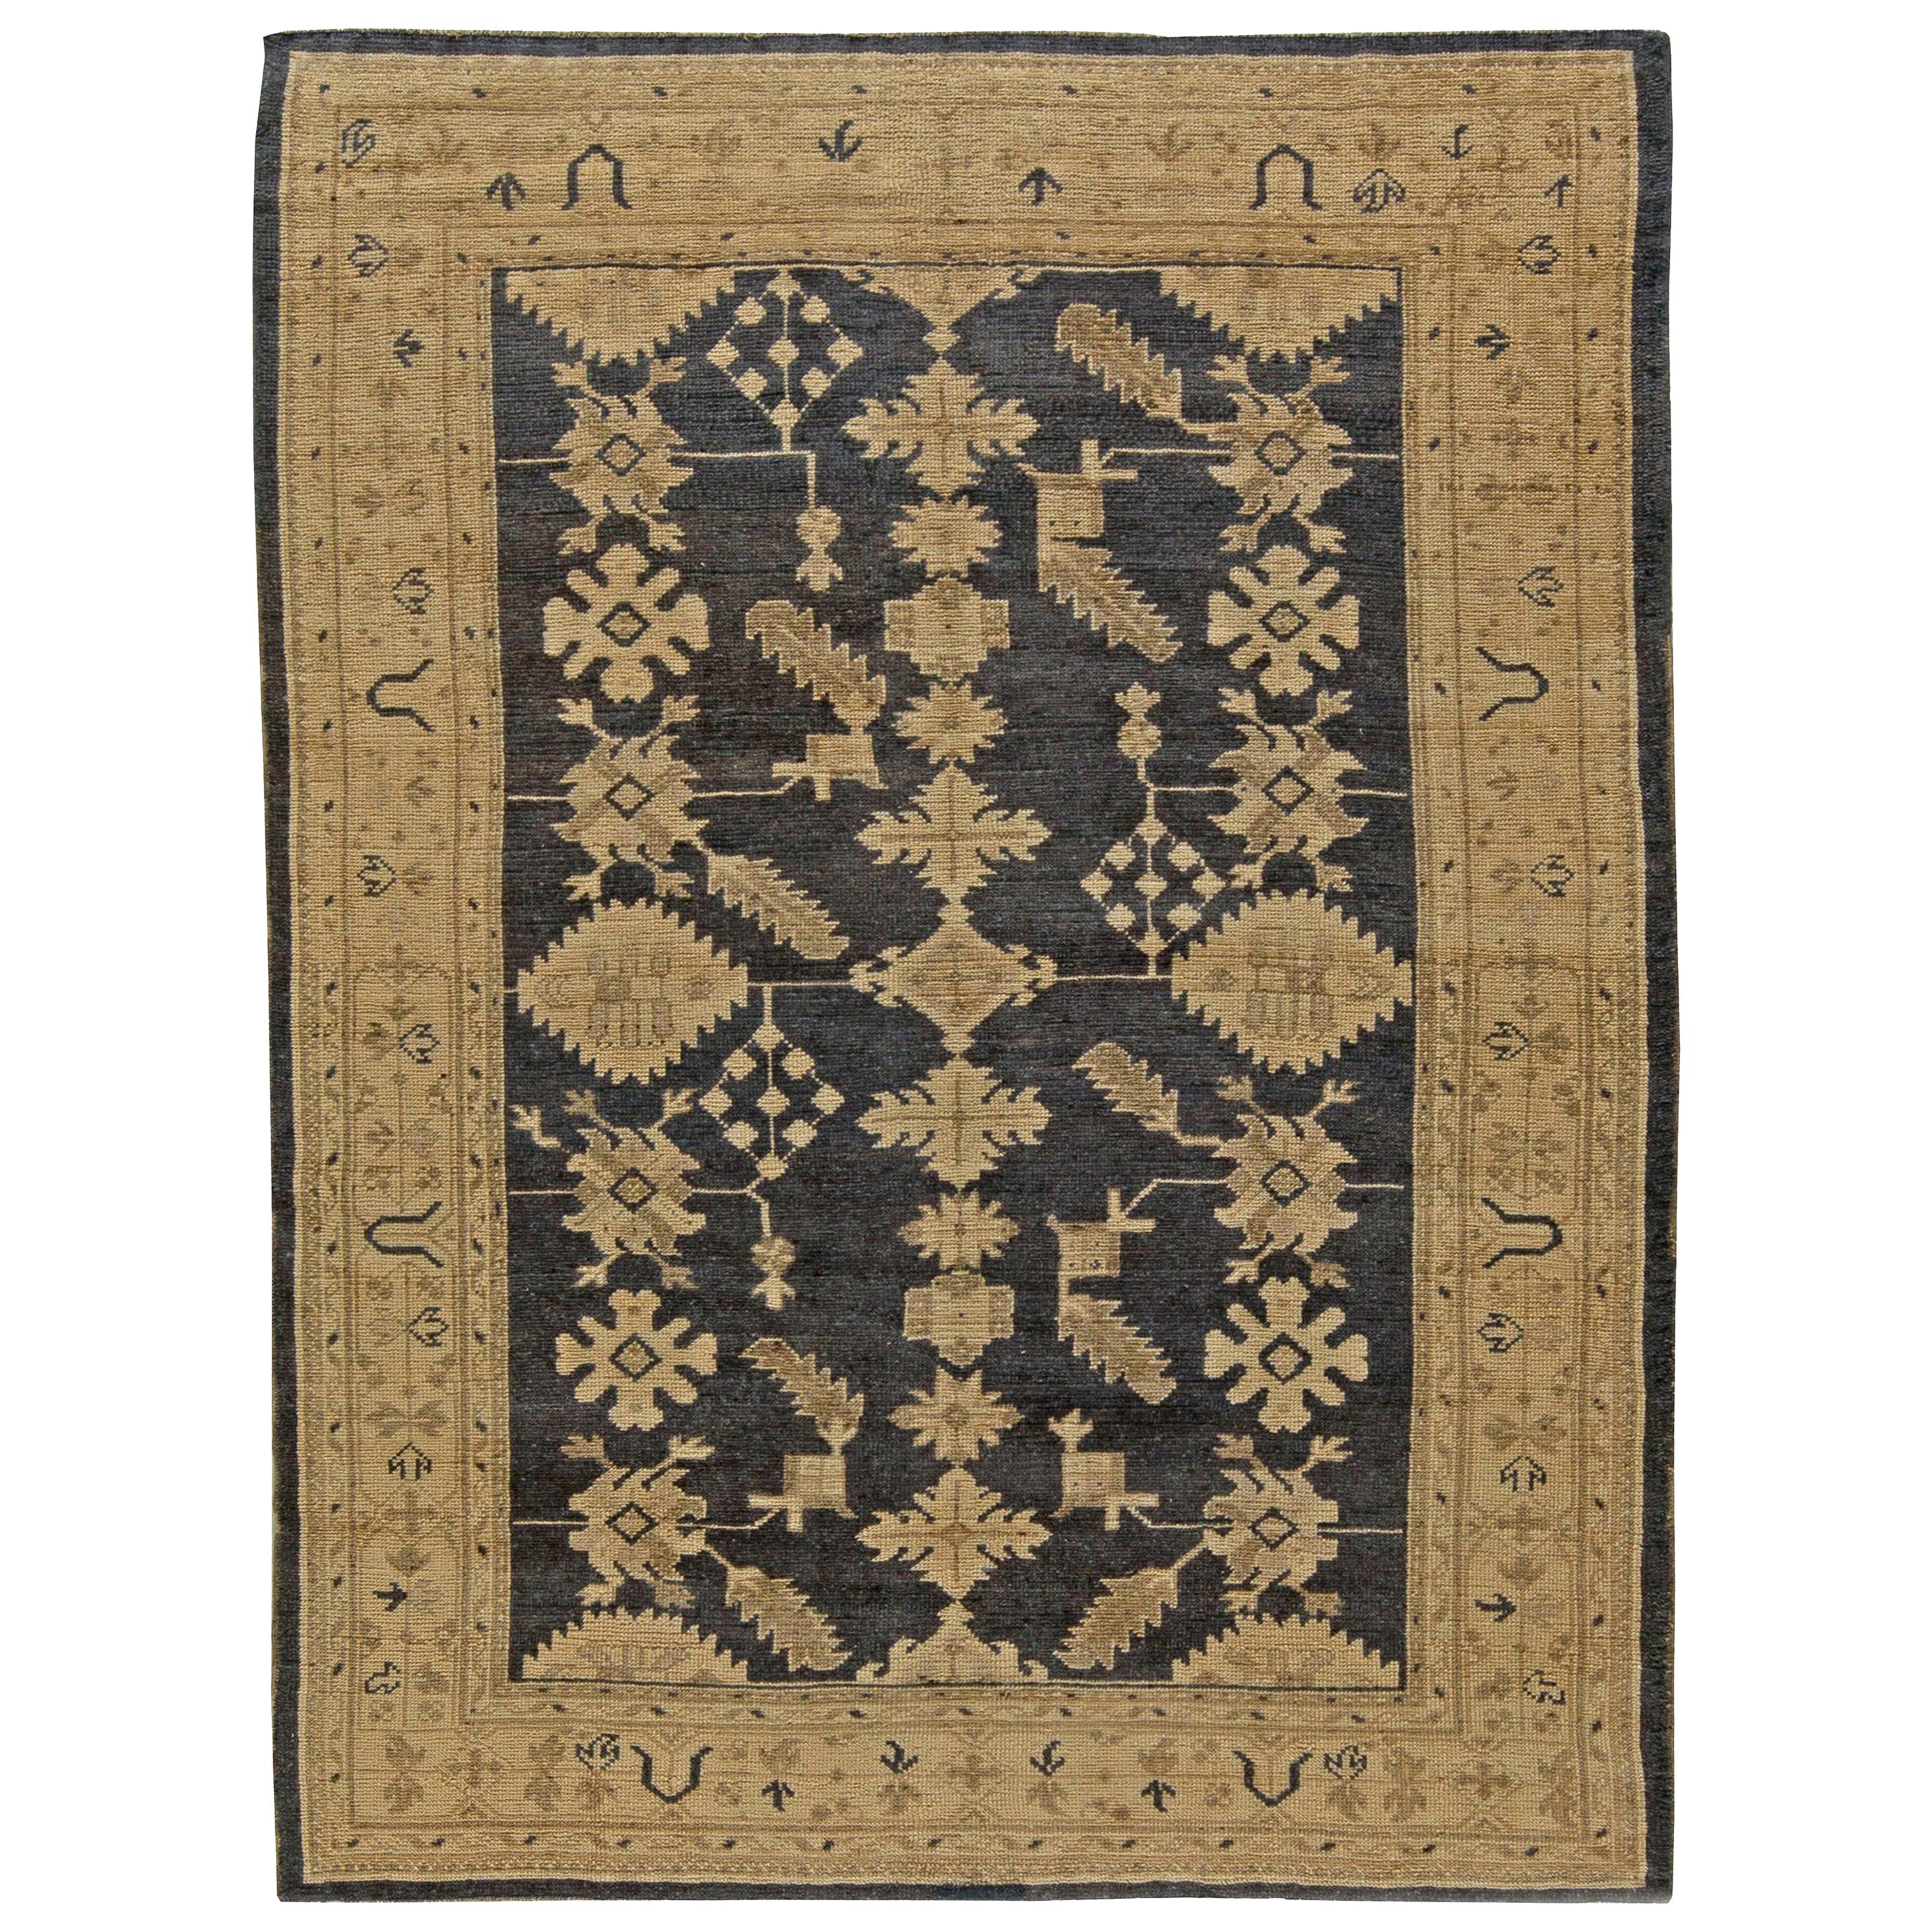 Türkischer Oushak-Teppich des frühen 20. Jahrhunderts, handgefertigt